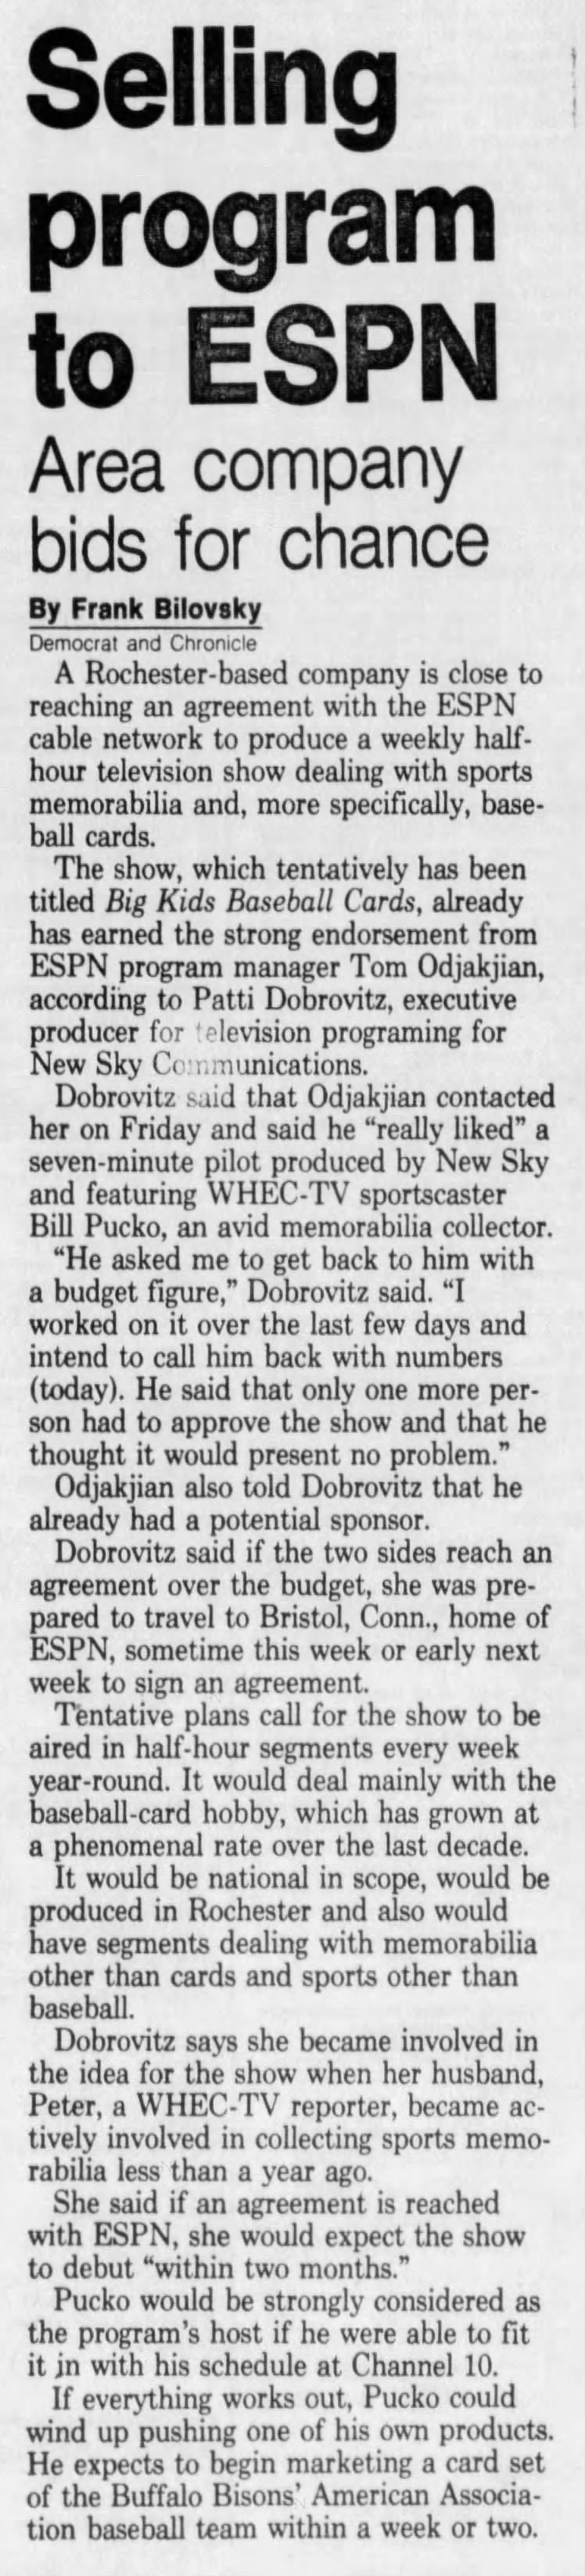 Bill Pucko - May 11, 1987